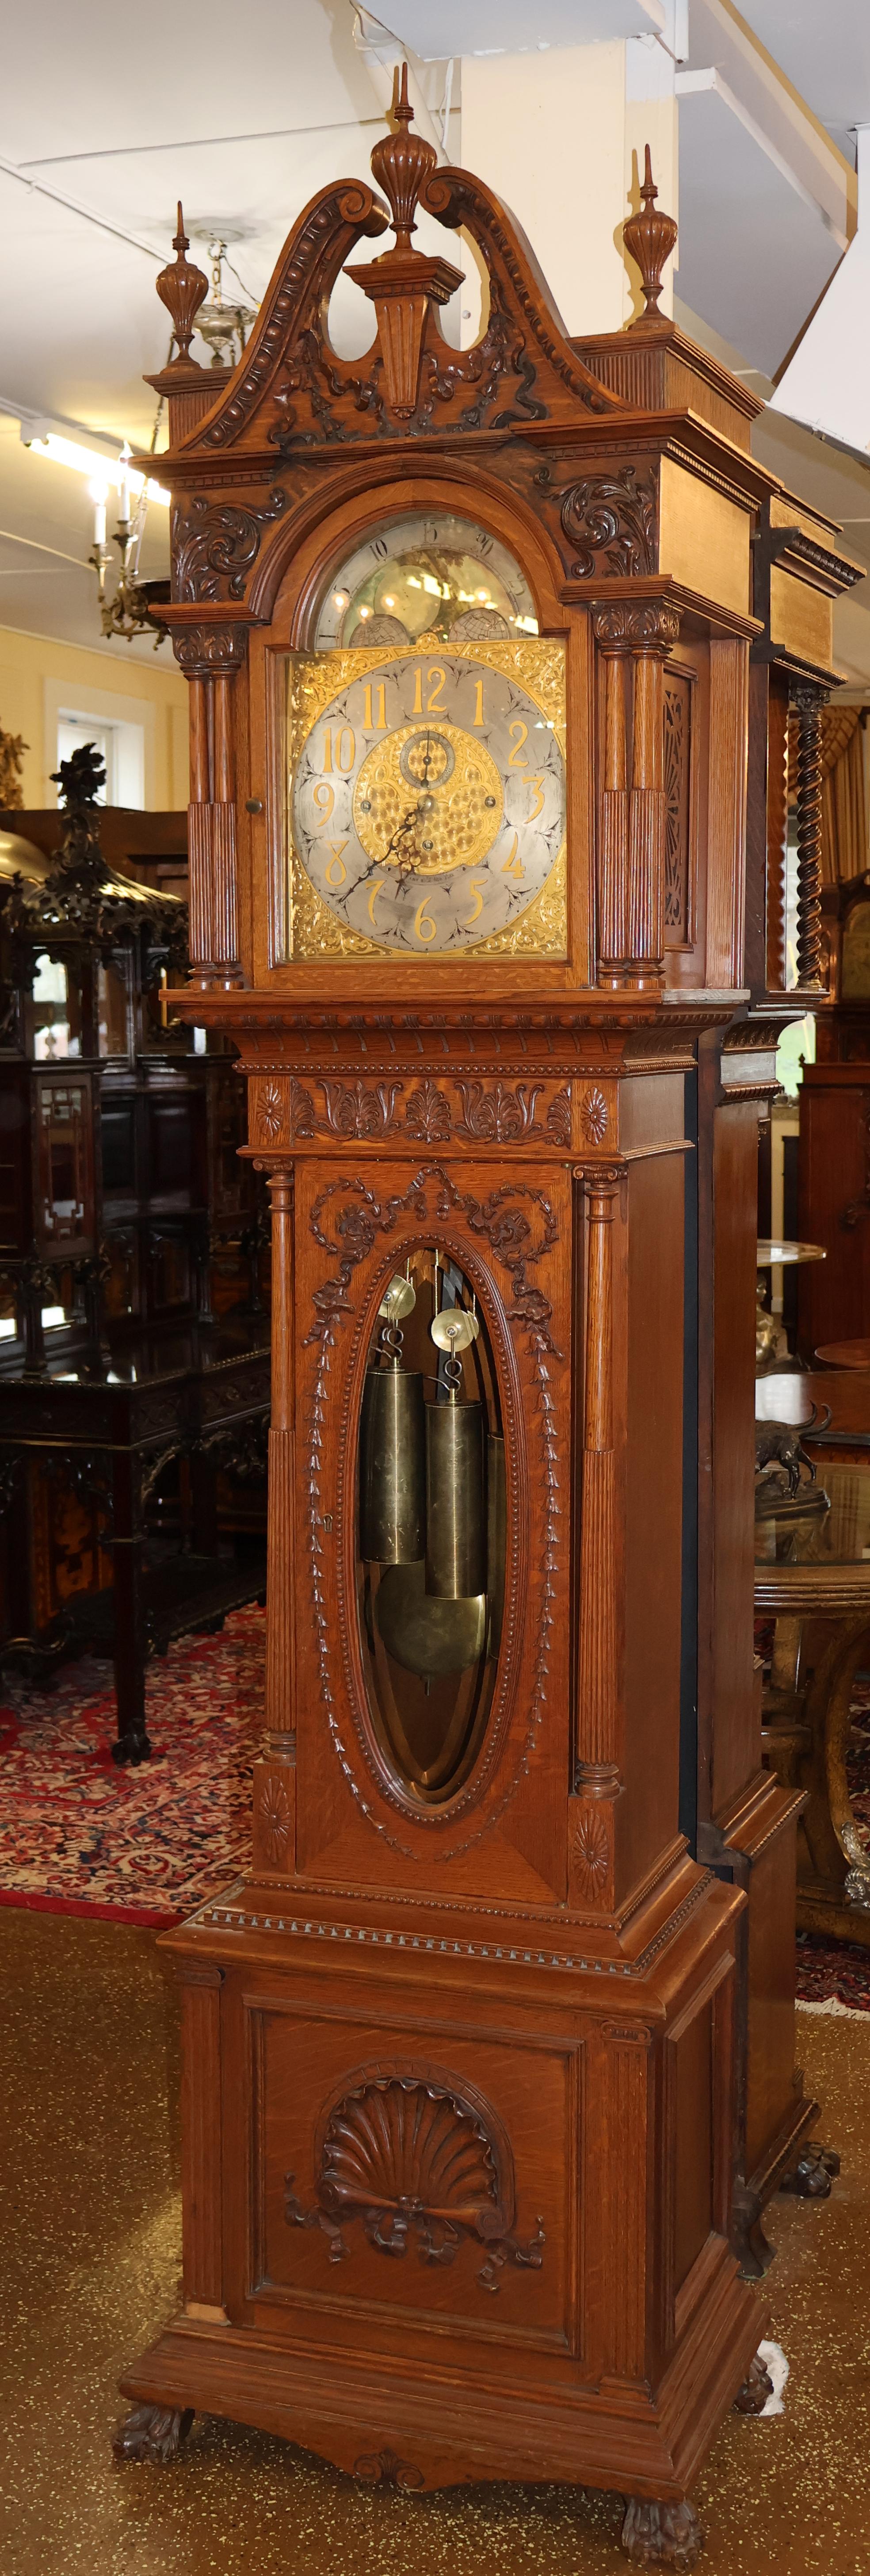 19. Jahrhundert Tiffany & CO Eiche 5 musikalische 5 Gong hohe Gehäuse Großvater Uhr

Abmessungen: 104